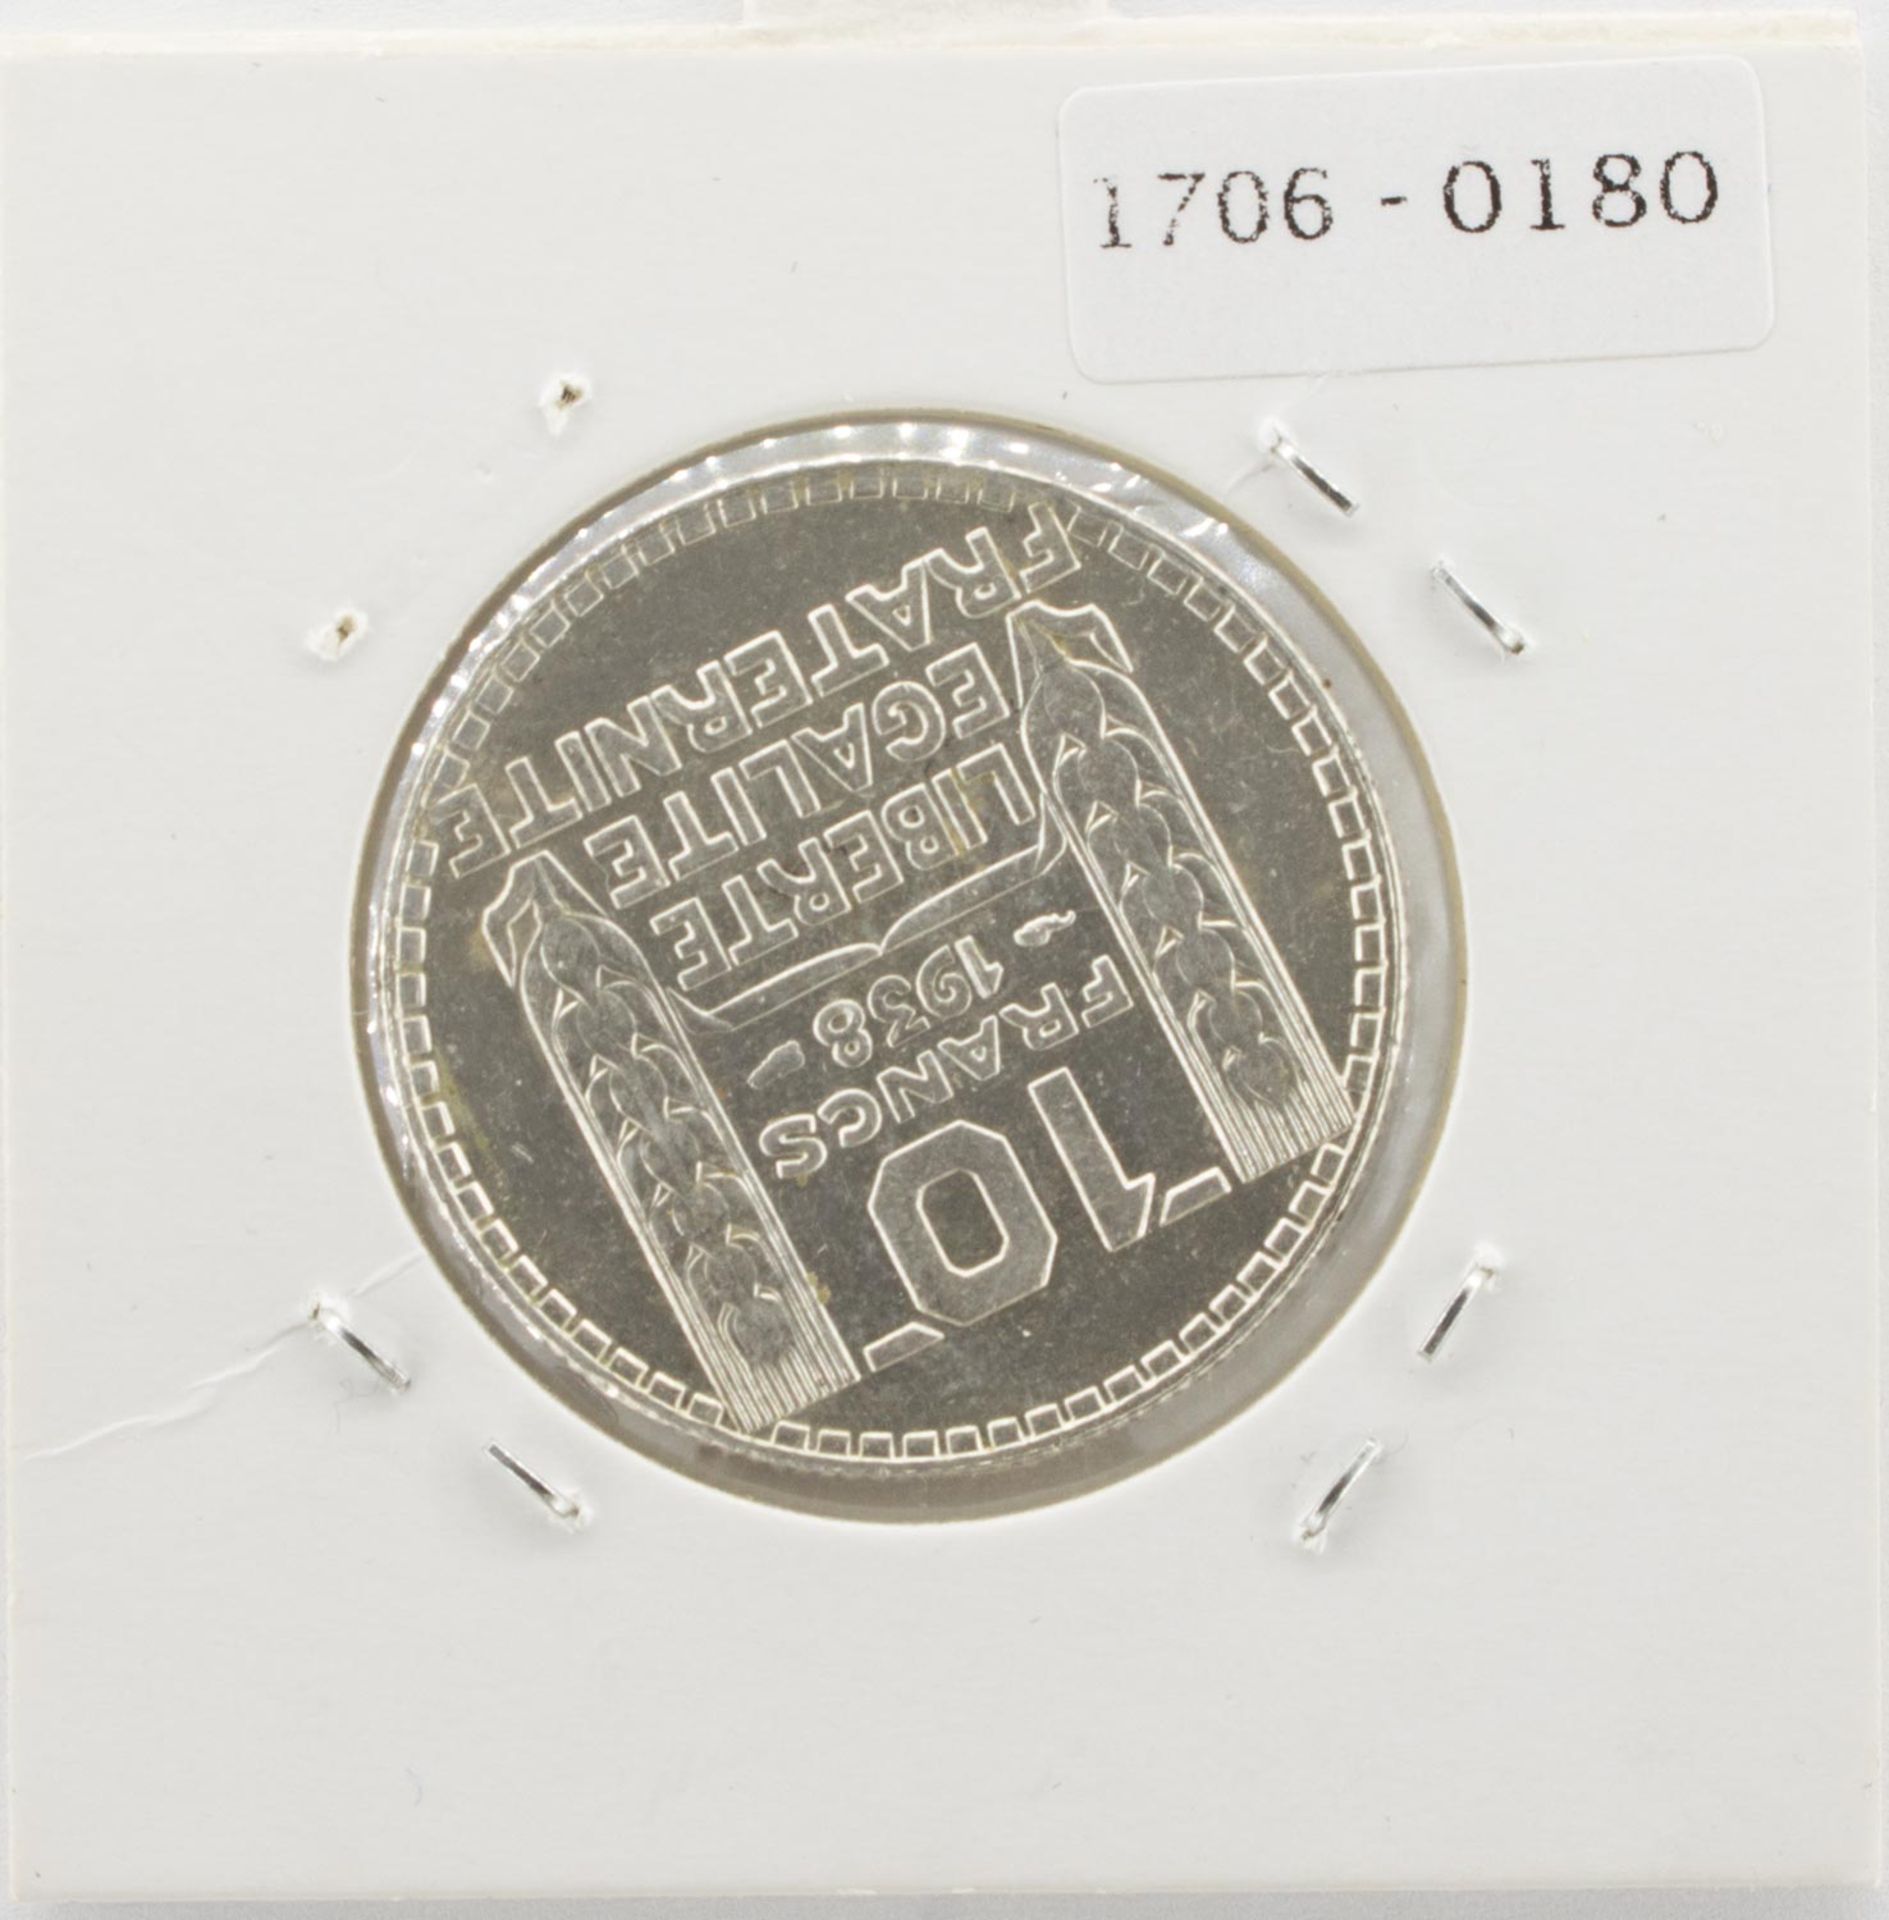 10 Francs - Image 2 of 2